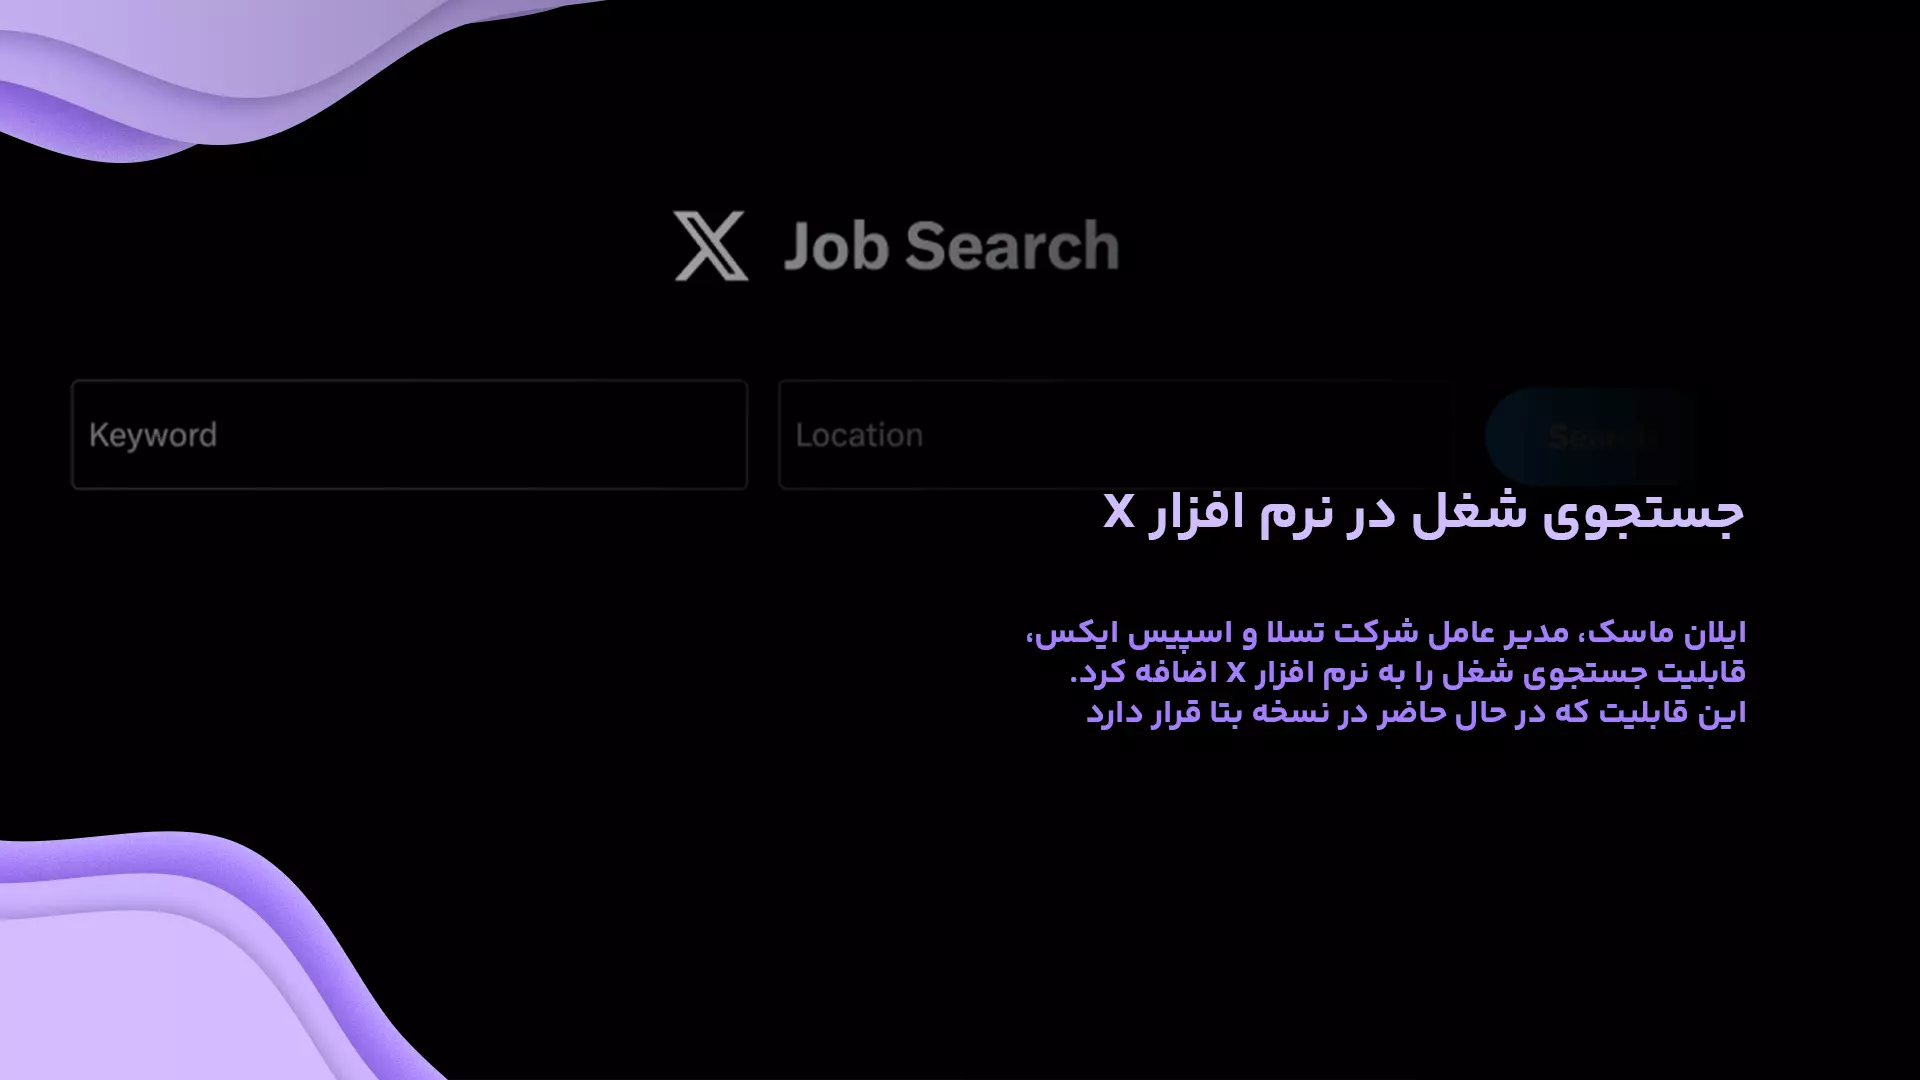 قابلیت جستجوی شغل در نرم افزار X